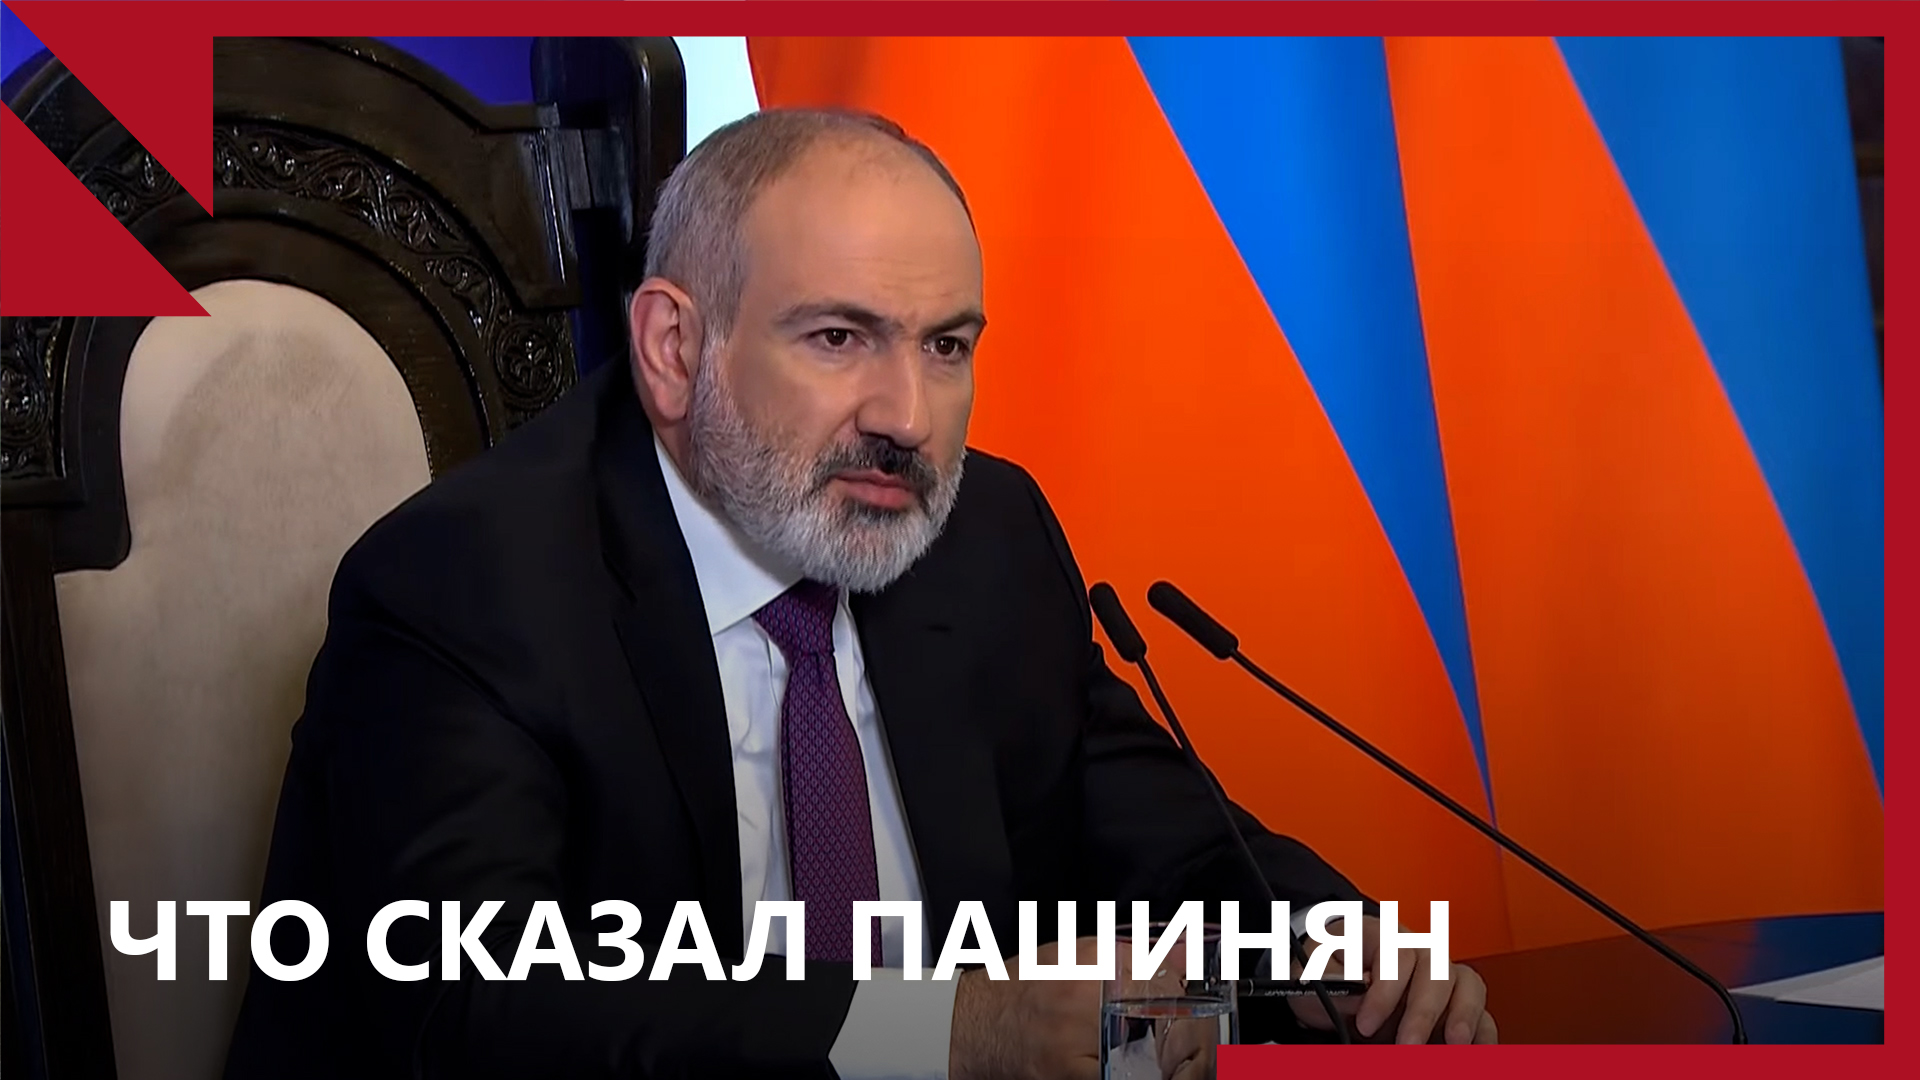 Нагорный Карабах, анклавы и ОДКБ главное из пресс-конференции Пашиняна